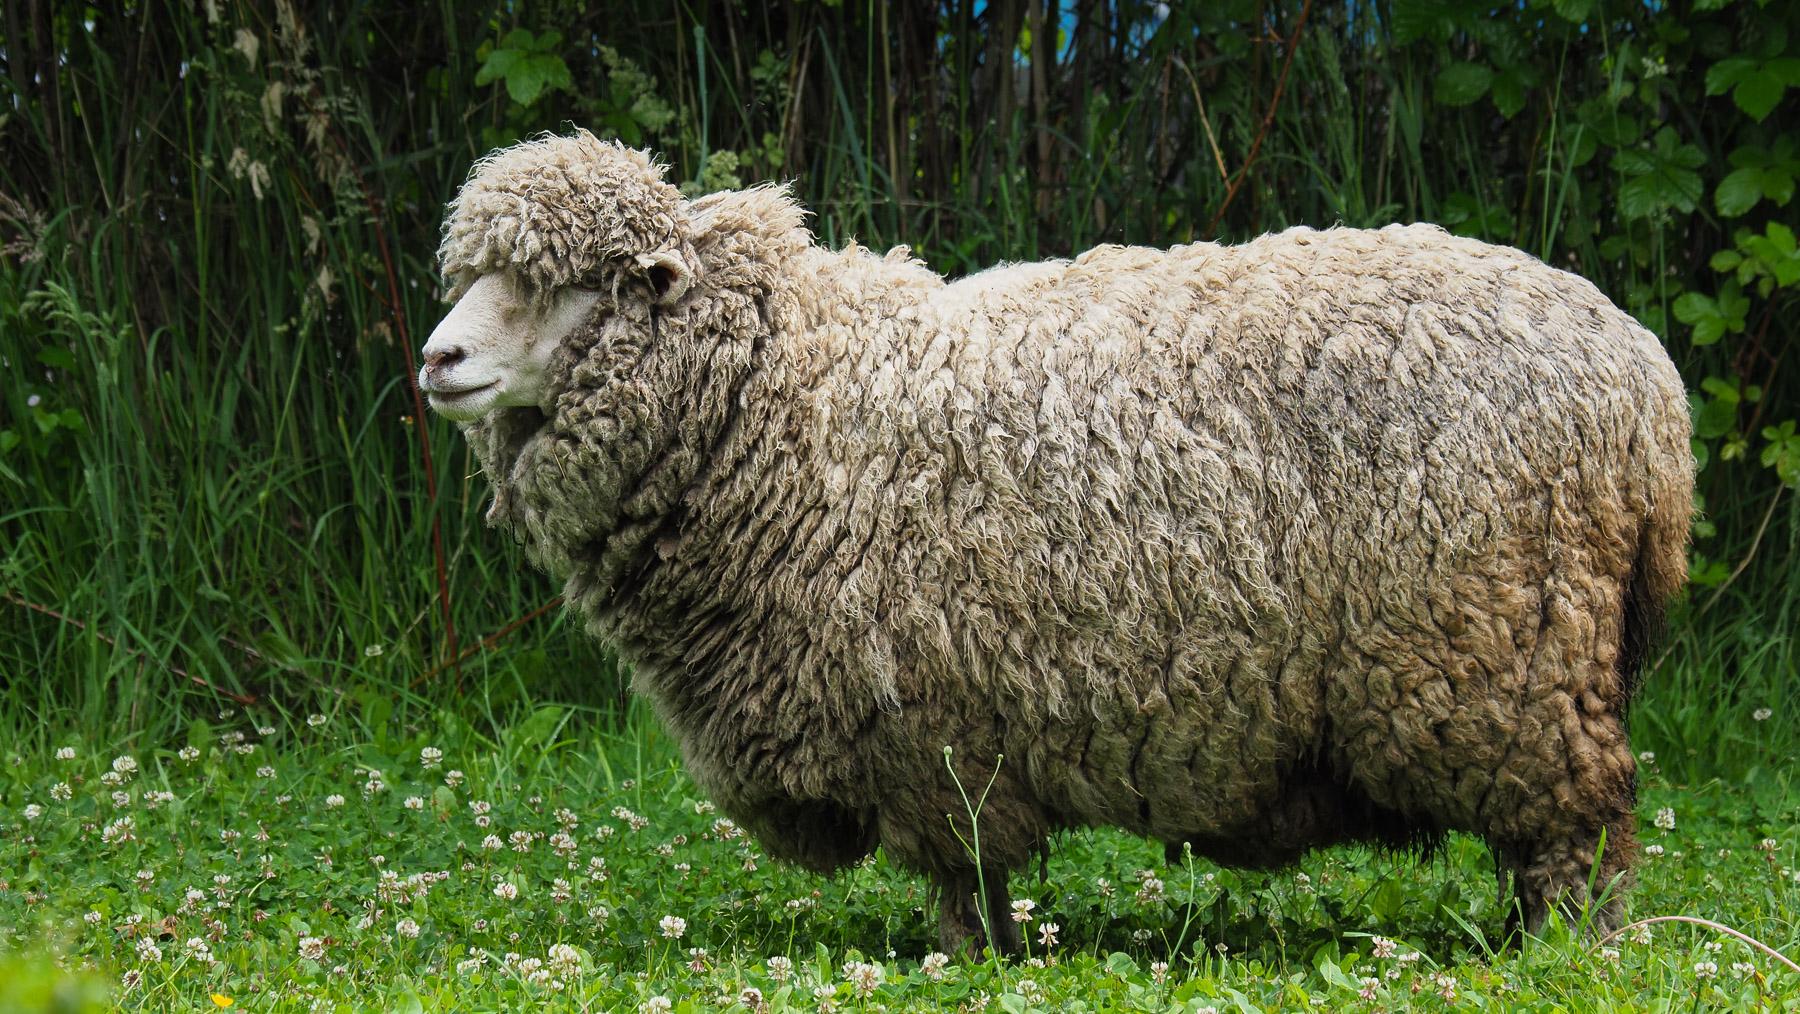 Wieviel kg Wolle wohl dieses Schaf trägt?